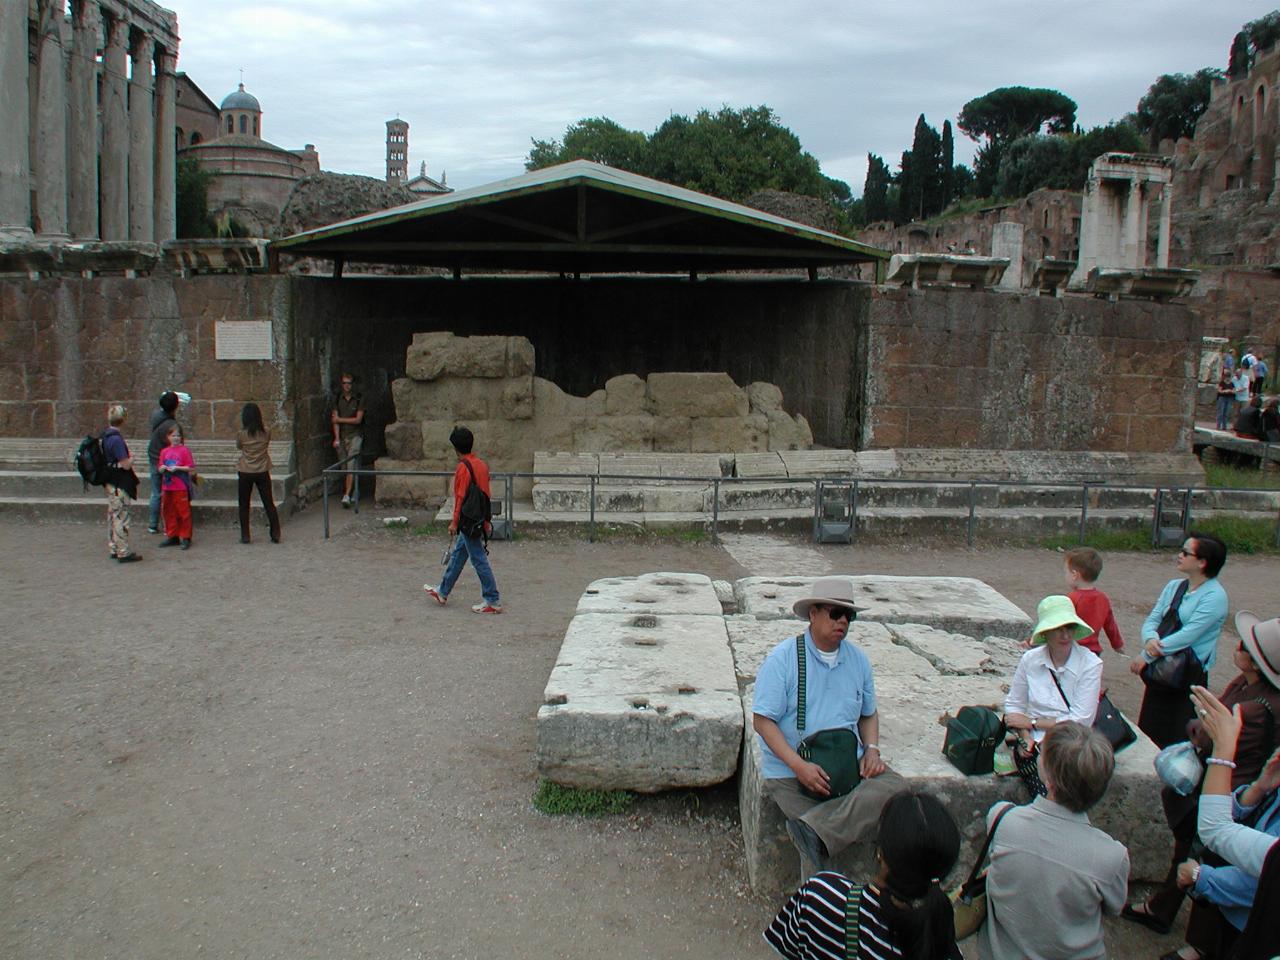 Temple of Julius Caesar, where Caesar was cremated